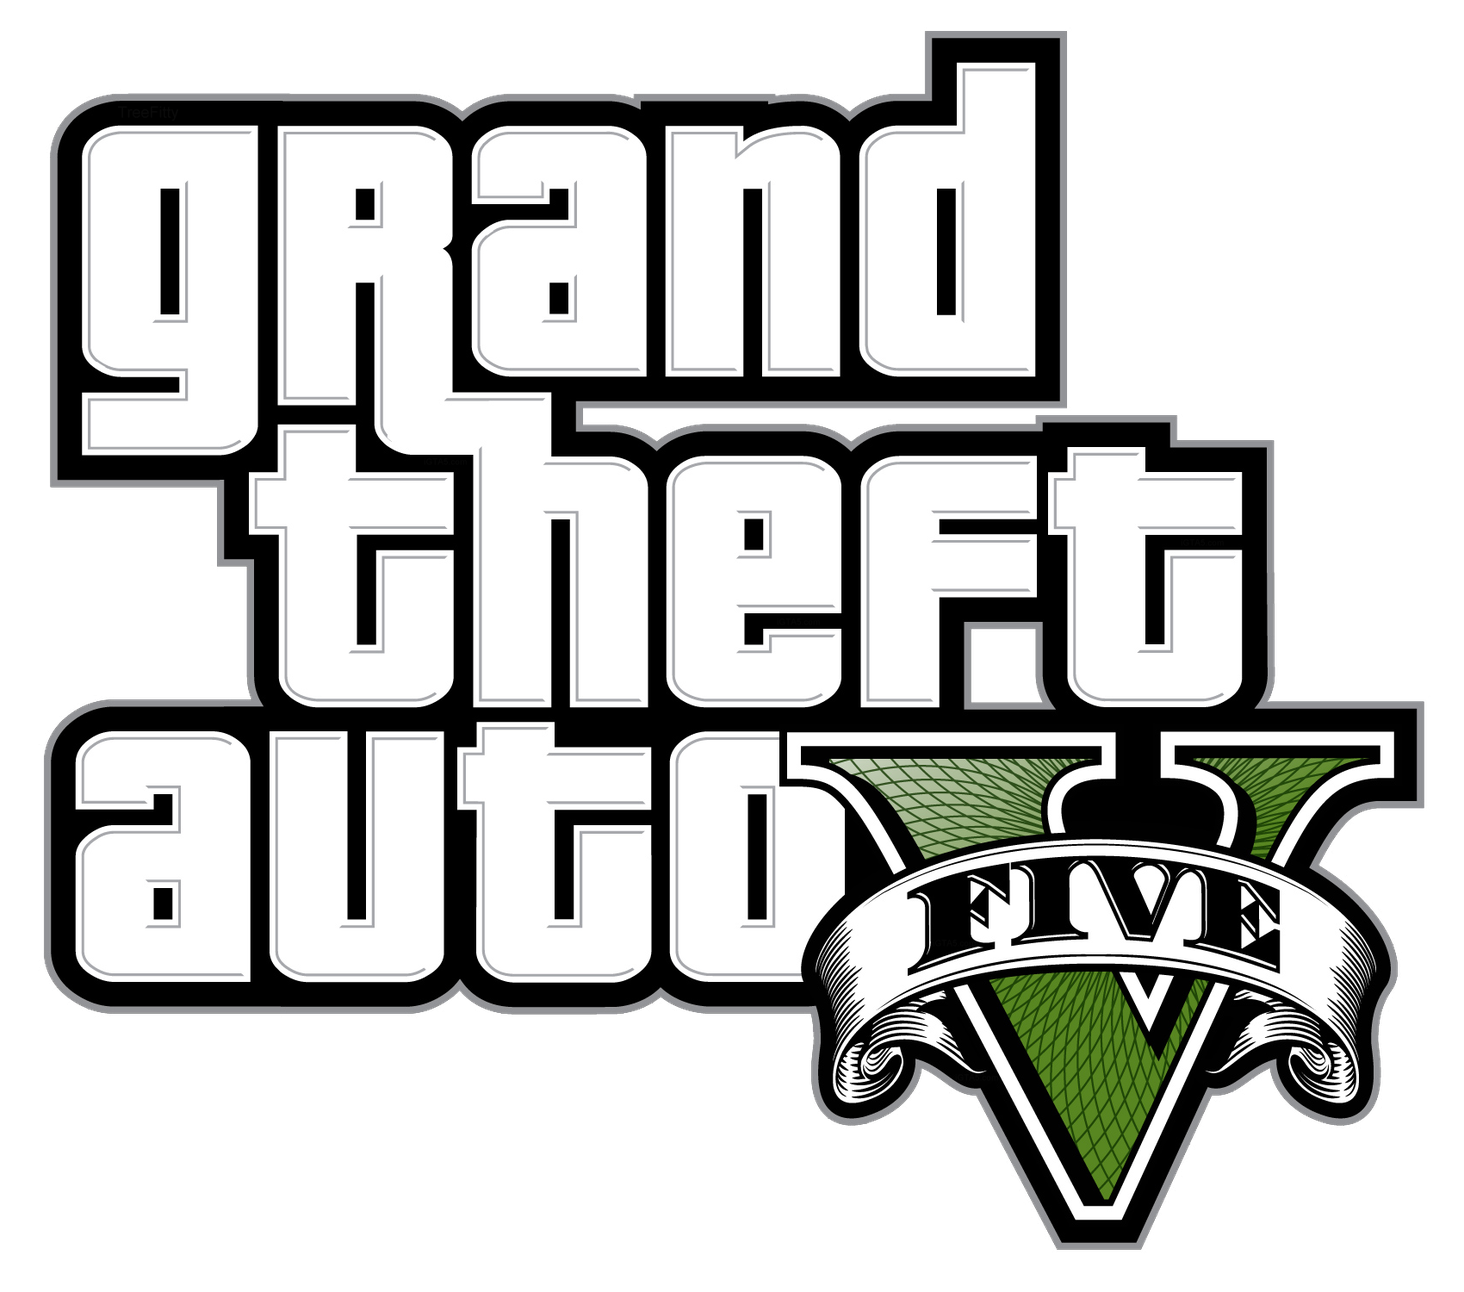 Jogo Grand Theft Auto V (gta 5) Premium Edition - Xbox One no Shoptime